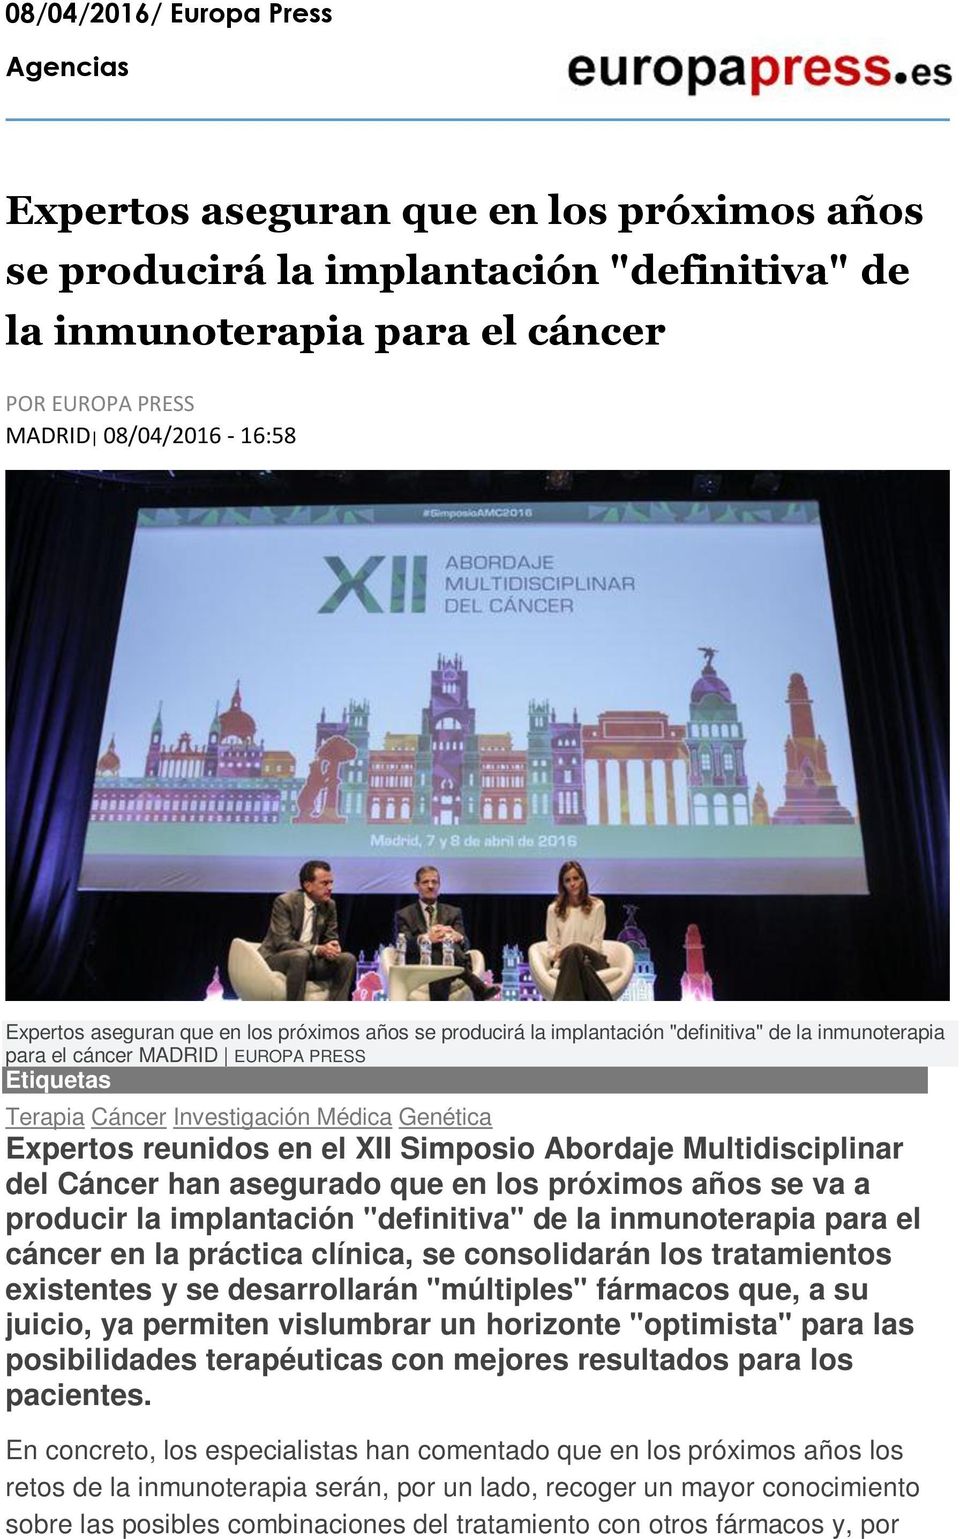 Expertos reunidos en el XII Simposio Abordaje Multidisciplinar del Cáncer han asegurado que en los próximos años se va a producir la implantación "definitiva" de la inmunoterapia para el cáncer en la